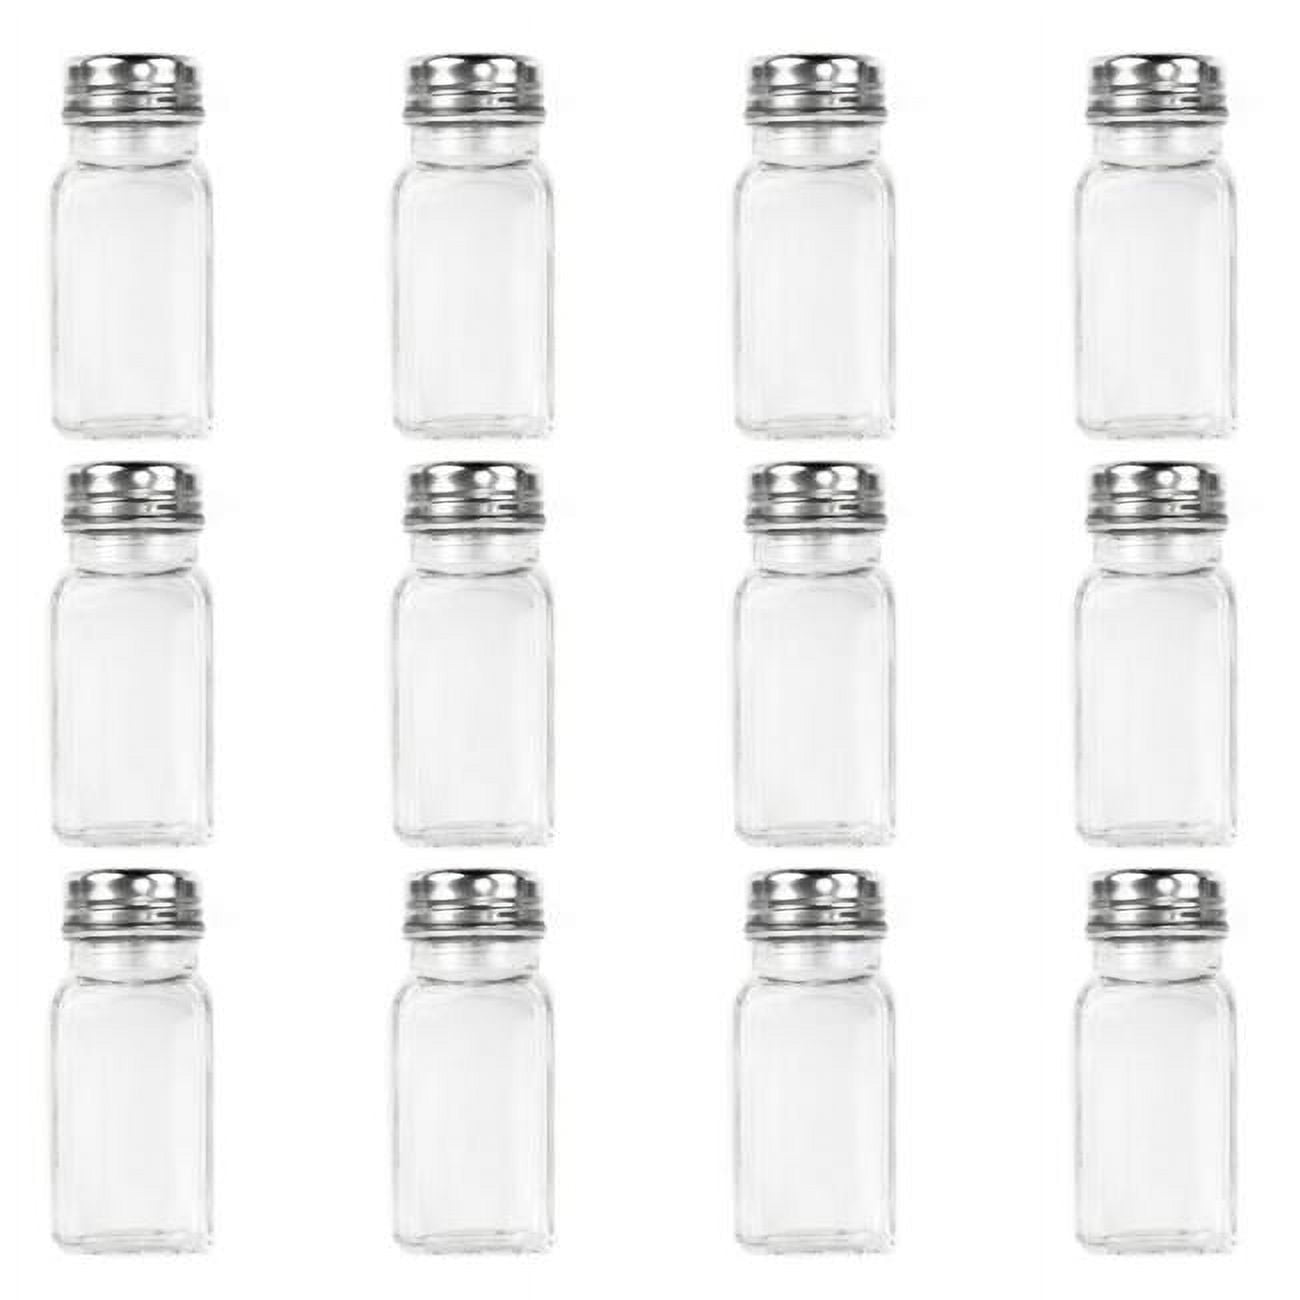 Ktbl-001 12 Salt & Pepper Shakers